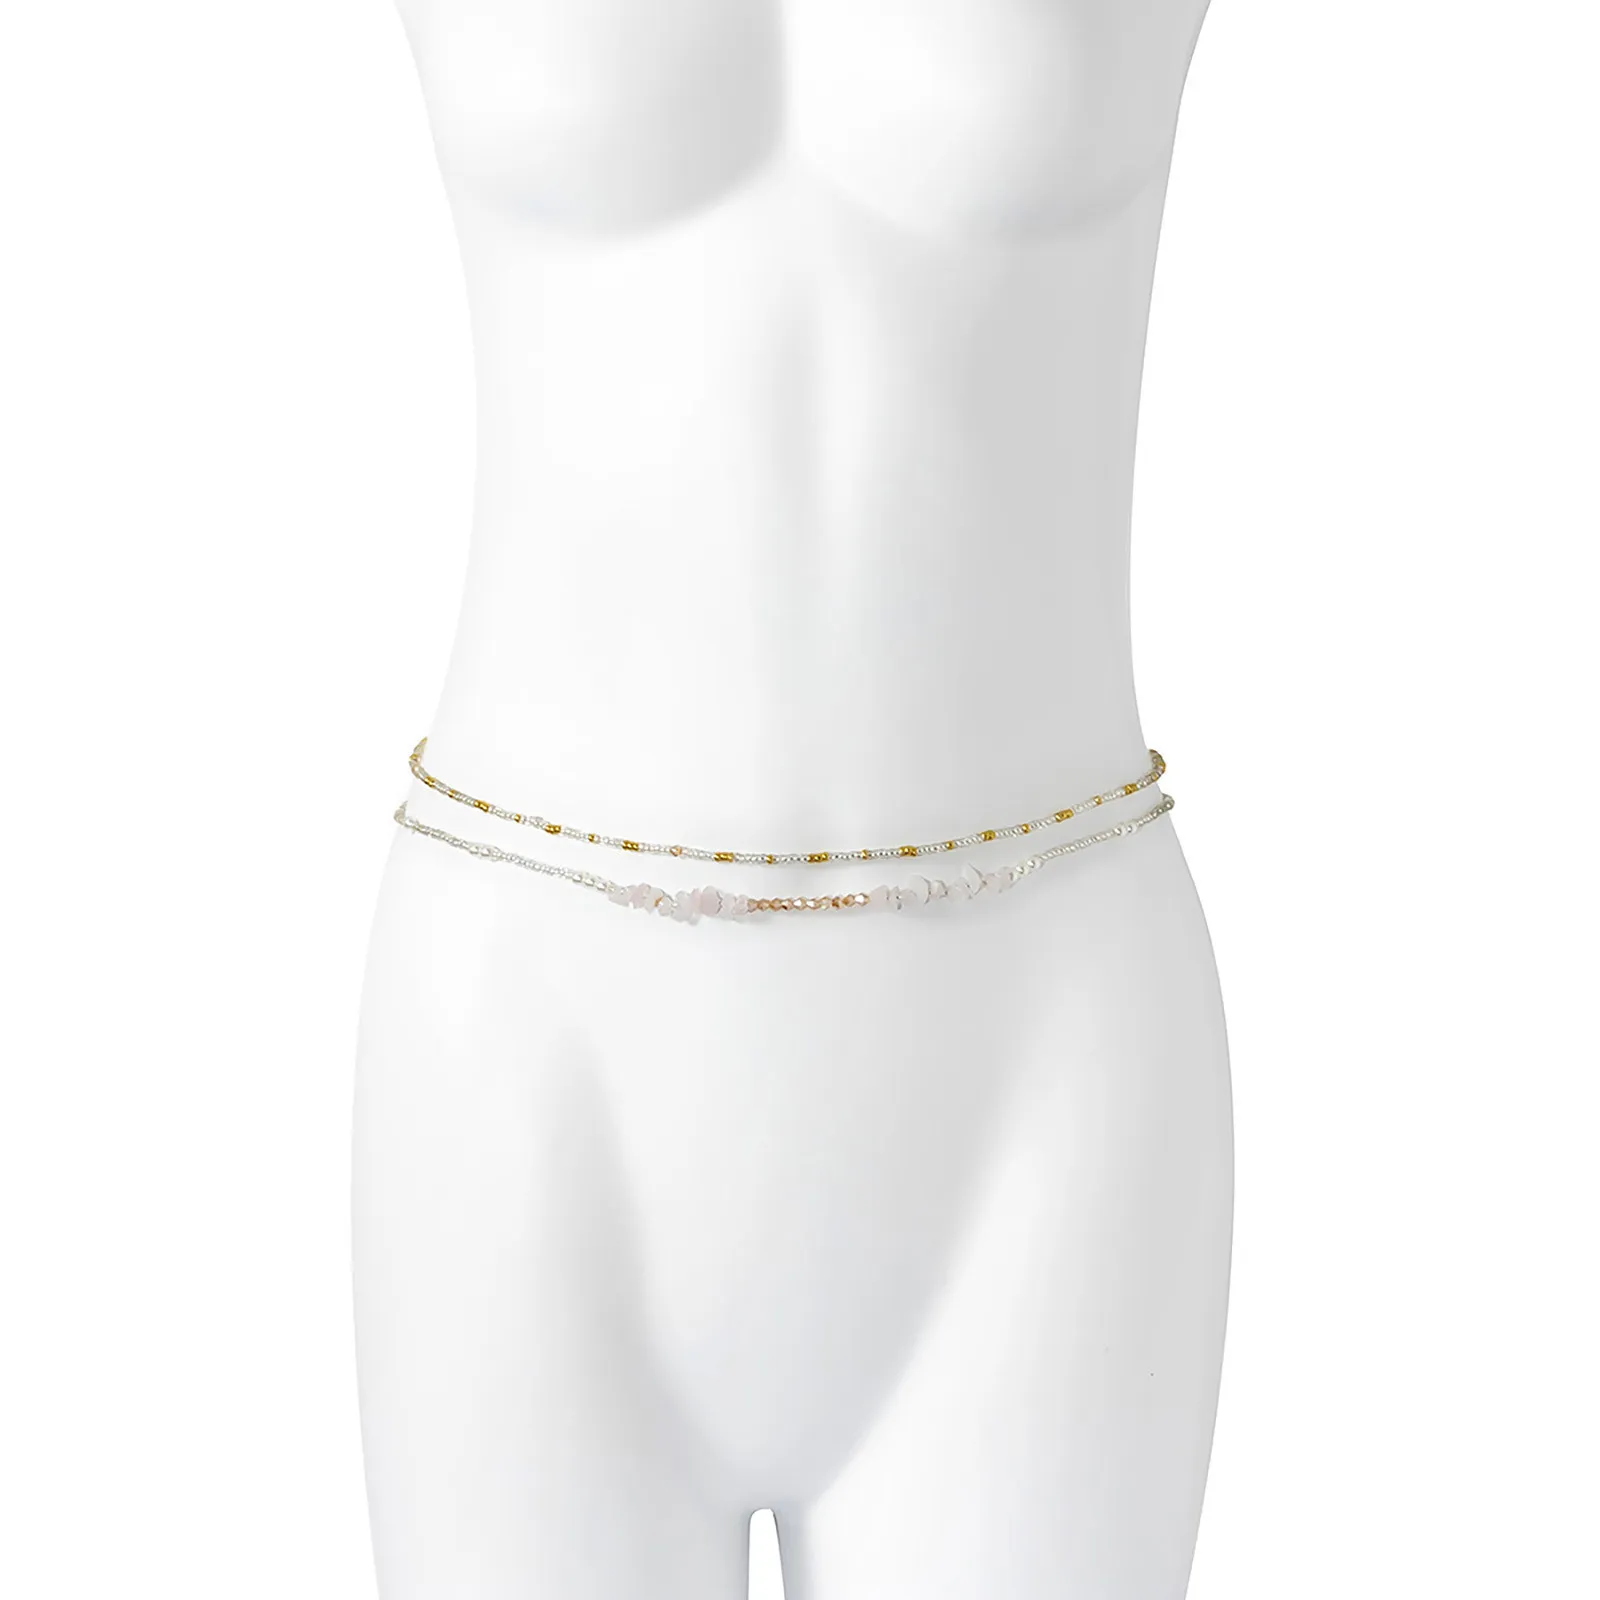 Frauen Perlen Multi-schicht Urlaub Stil Kontrast Farbe Kette Zodiaque Bauch Taille Sexy Körper Schmuck Geschenk